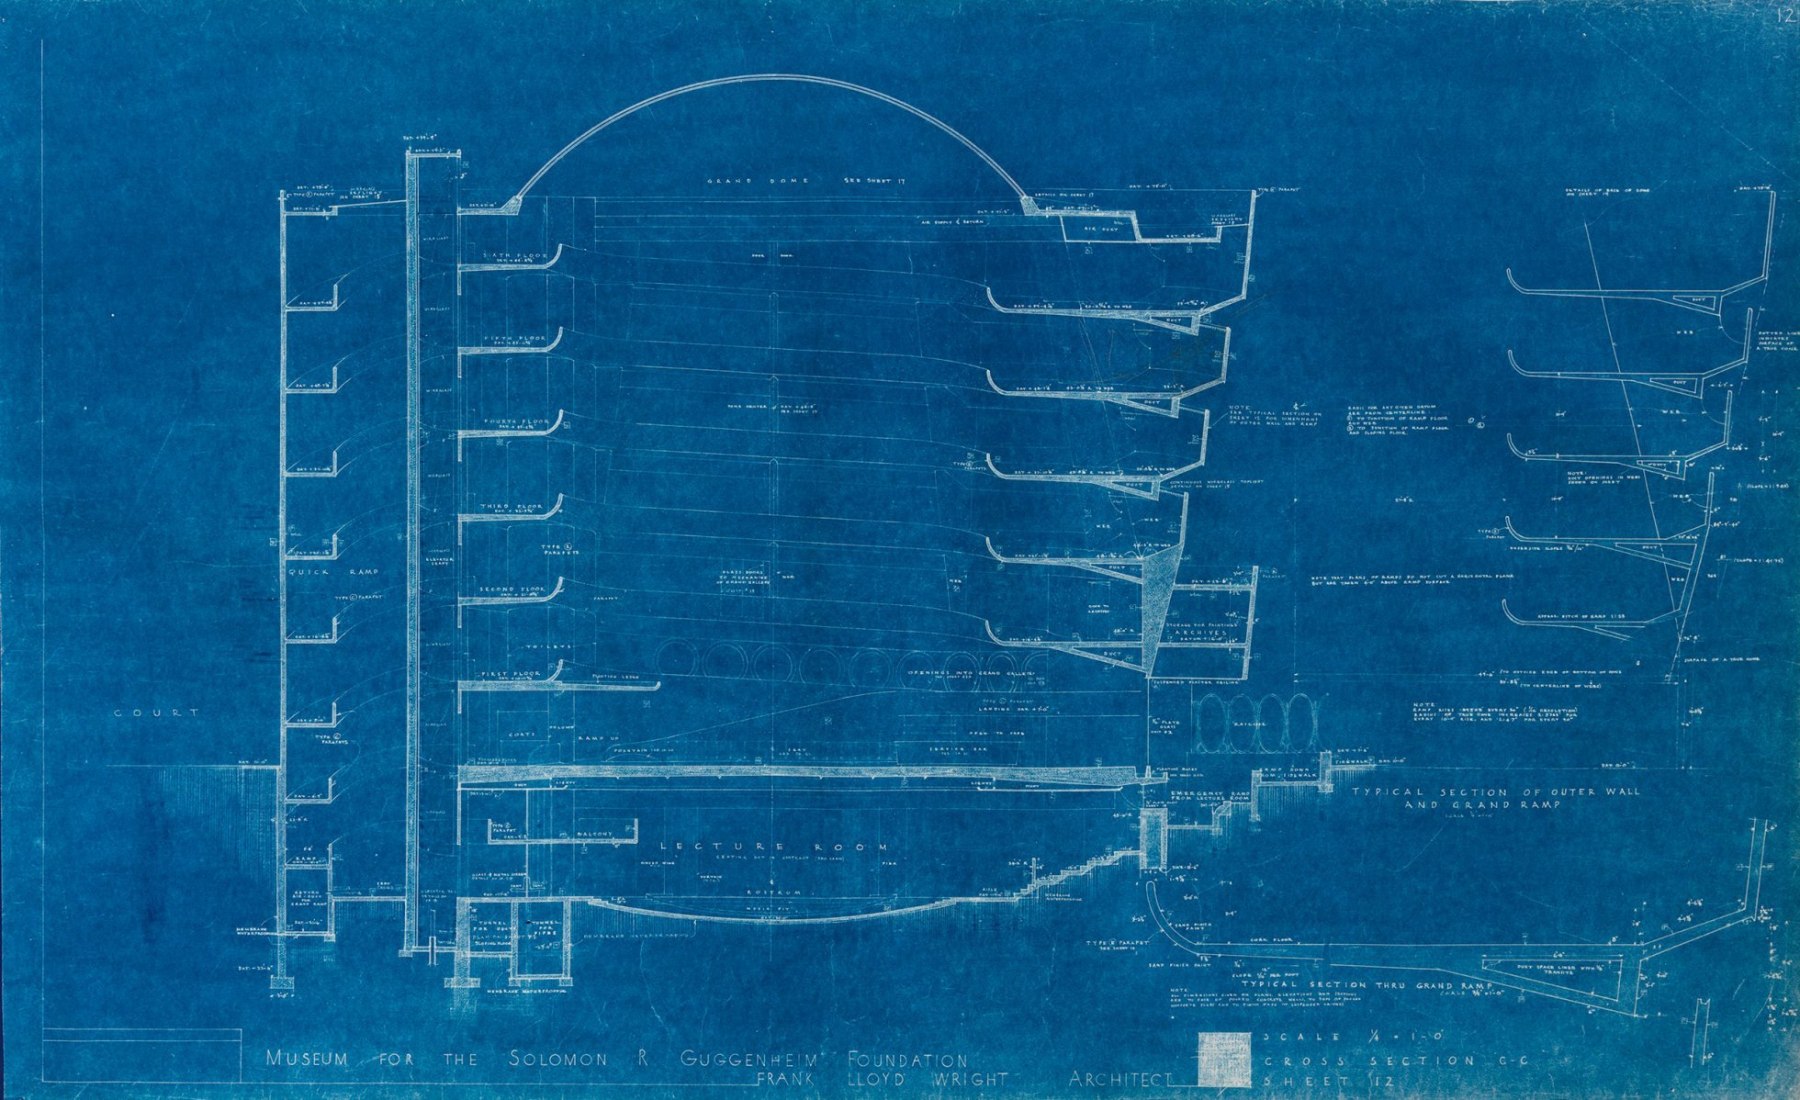 1953 sección del diseño propuesto del museo de Guggenheim. Imagen © 2017 Fundación Frank Lloyd Wright, Scottsdale, AZ. Todos los derechos reservados.